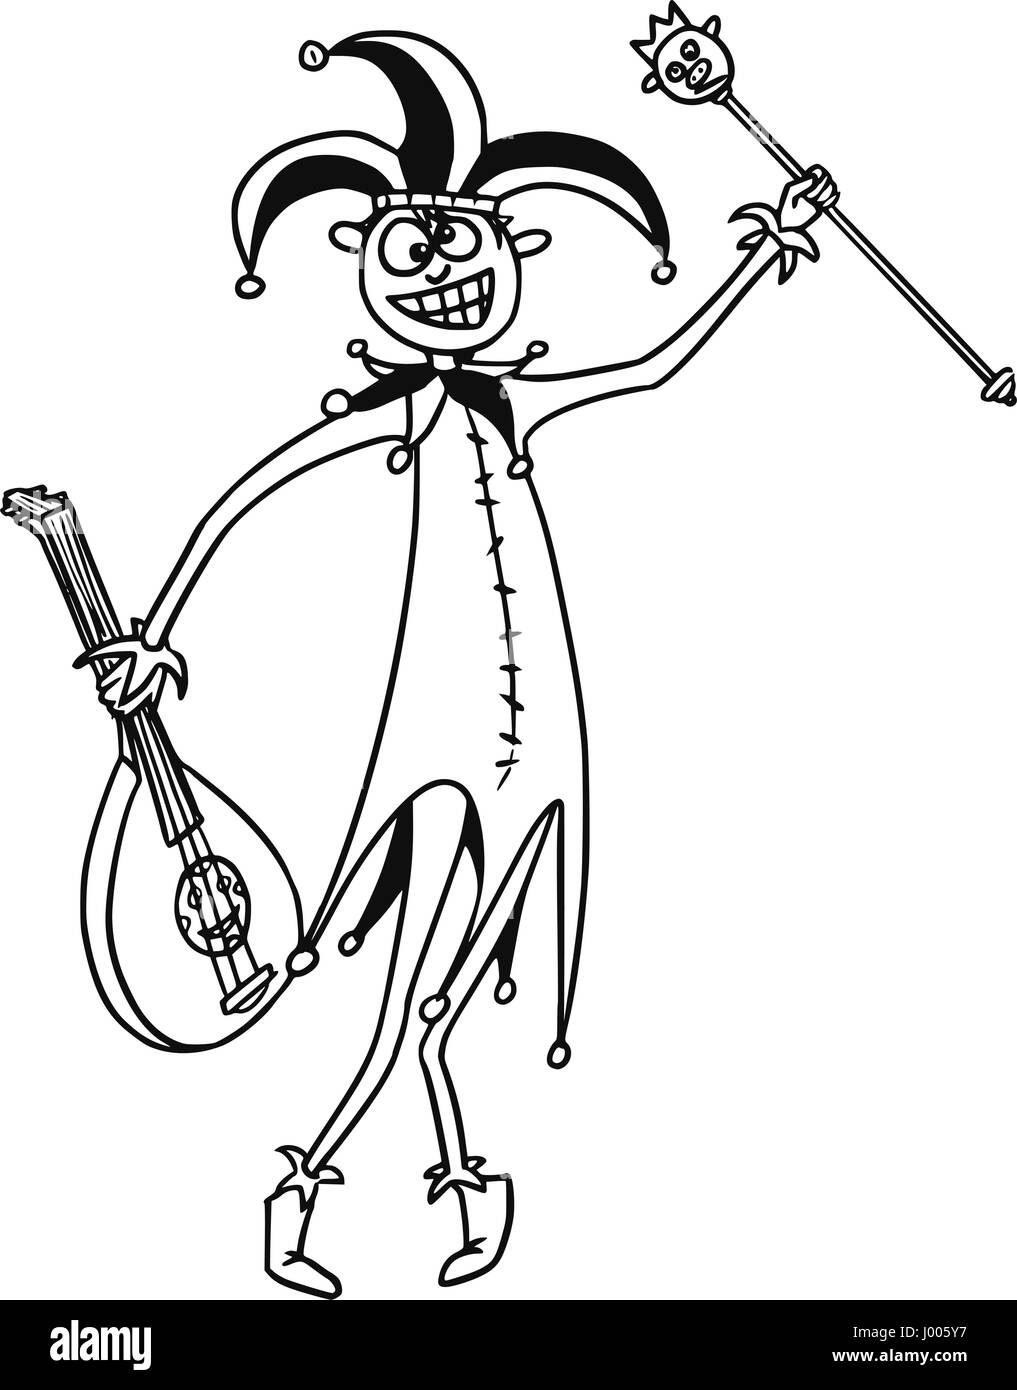 Vettore di fumetto fantasy buffone medievale pazzo clown buffone con hat, lo scettro e la cetra o la chitarra Illustrazione Vettoriale